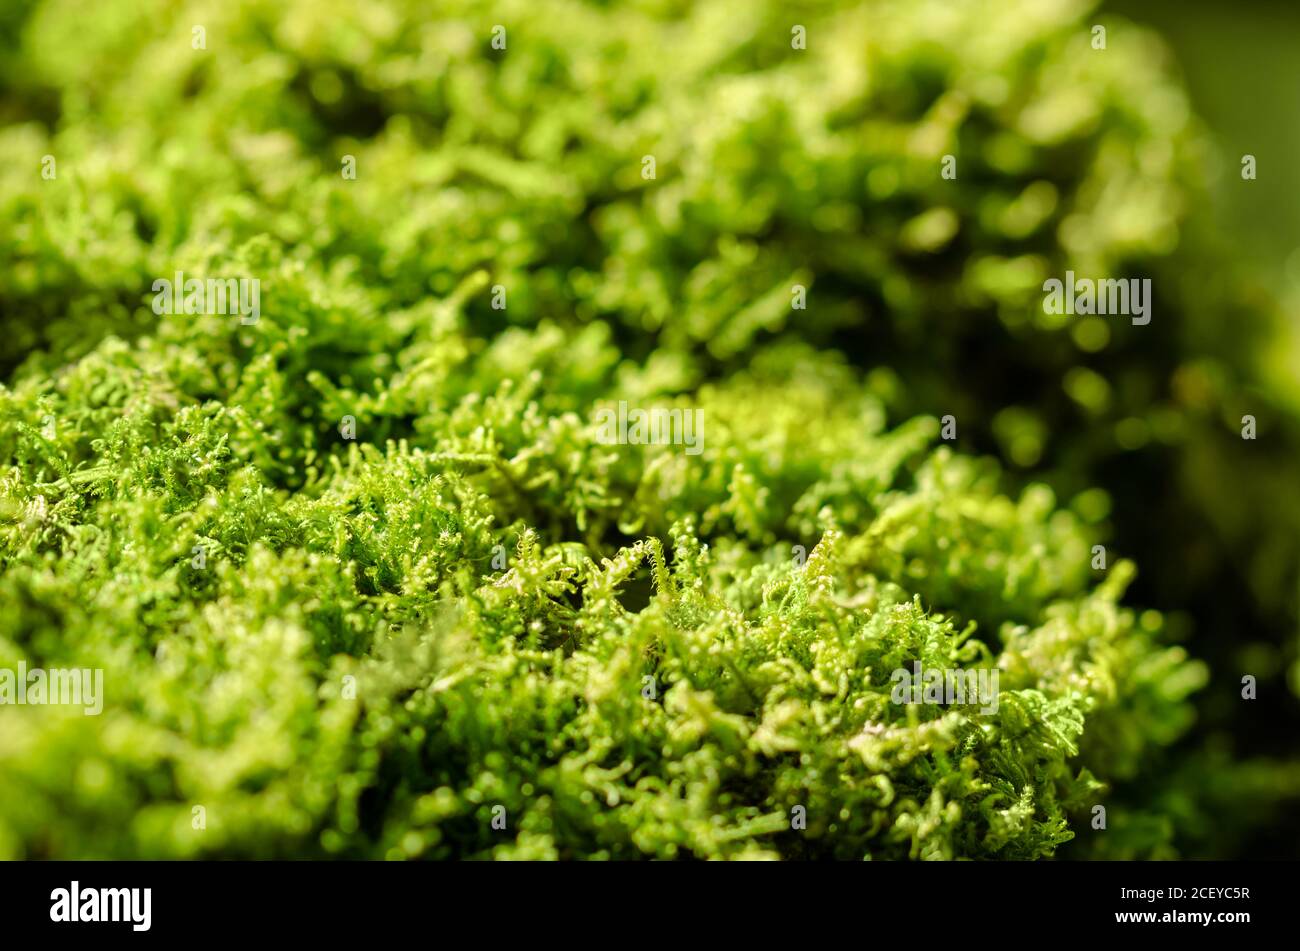 Mousse de vert frais sur une pierre dans une forêt. Petites plantes non vasculaires sans fleurs qui forment généralement des touffes ou des tapis verts denses. Banque D'Images